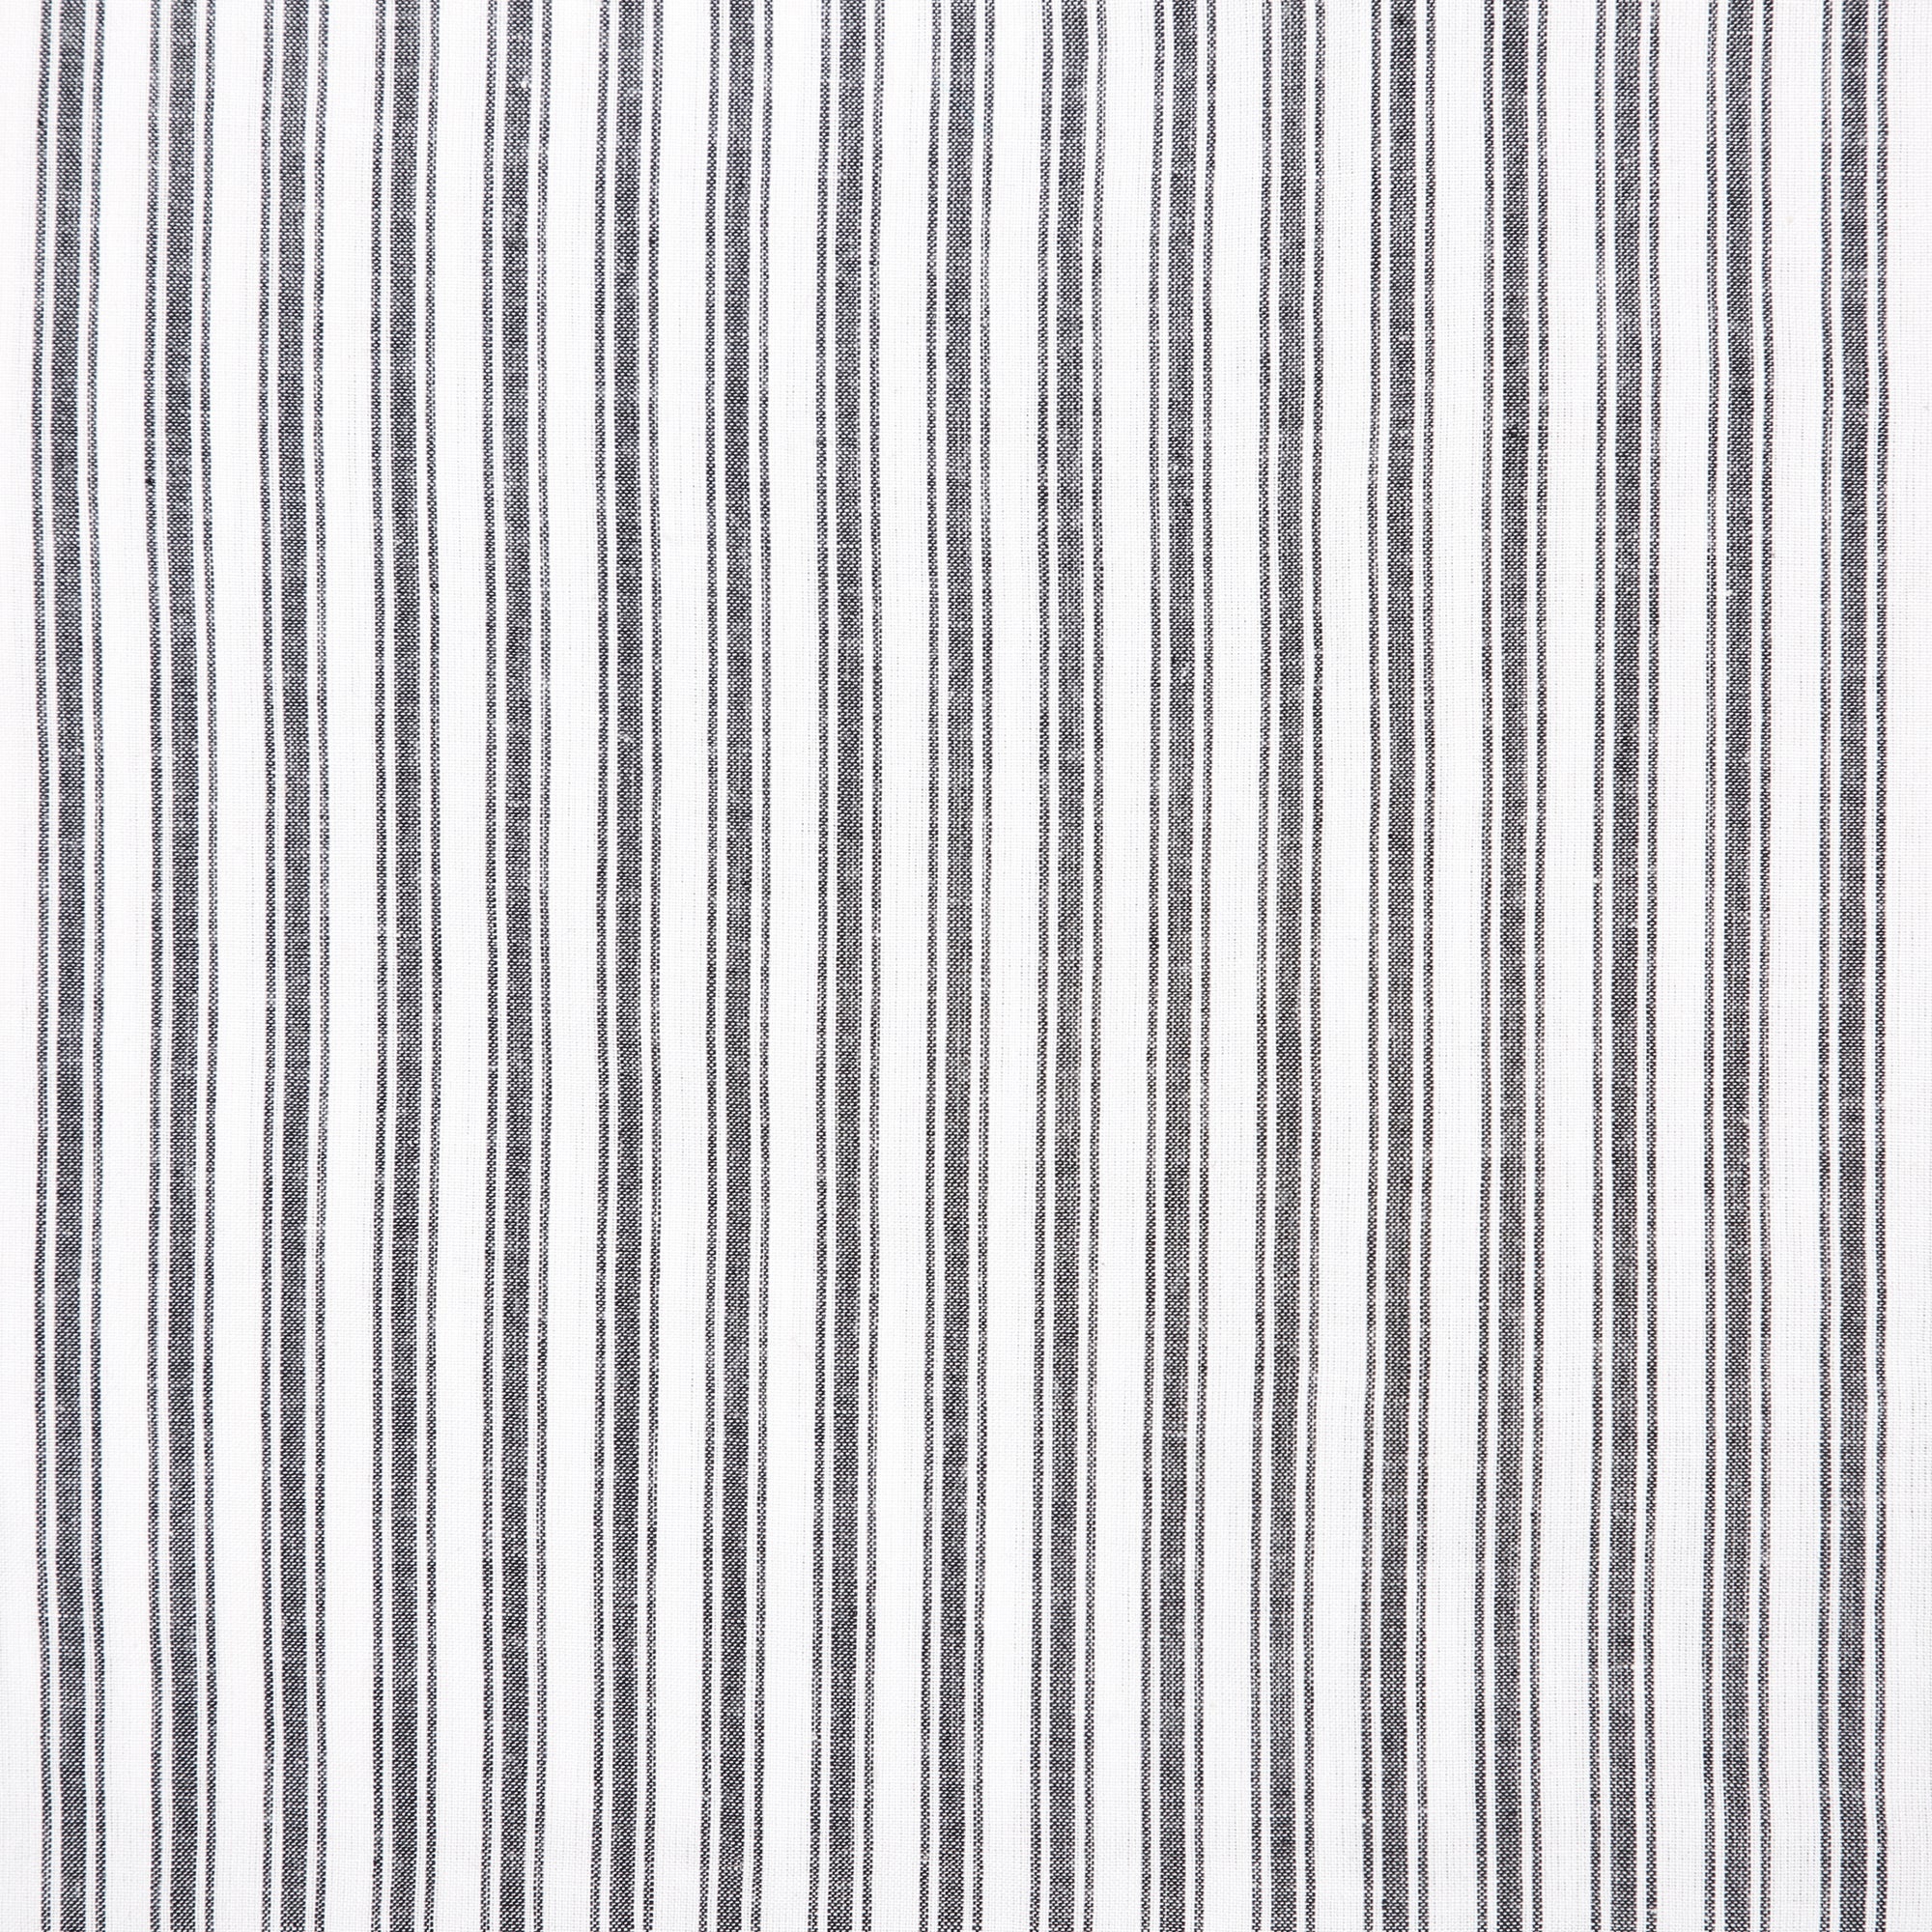 Sawyer Mill Black Ticking Stripe Queen Bed Skirt 60x80x16 VHC Brands